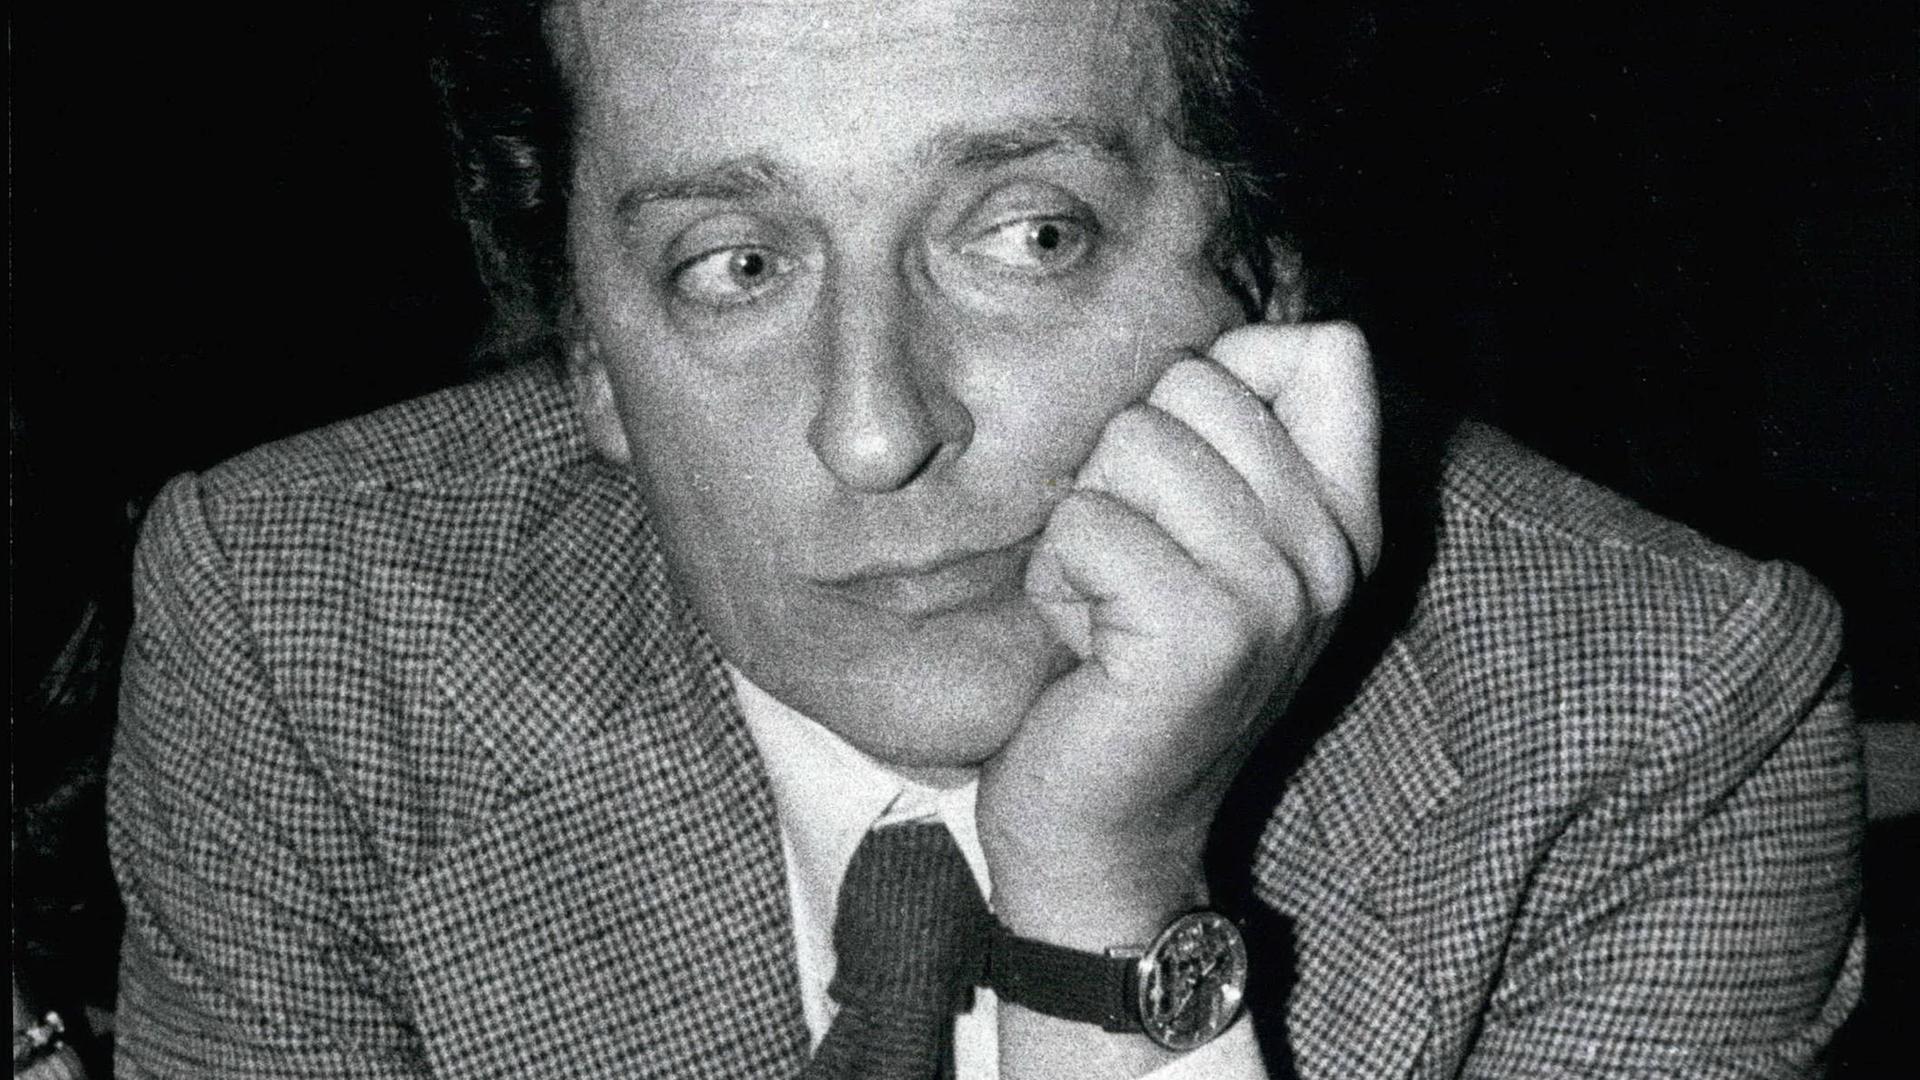 Schwarz-Weiß-Porträt von Carlo Ripa di Meana, der Präsident der Biennale in Venedig im Jahr 1977, er stützt seinen Kopf auf seine Hand